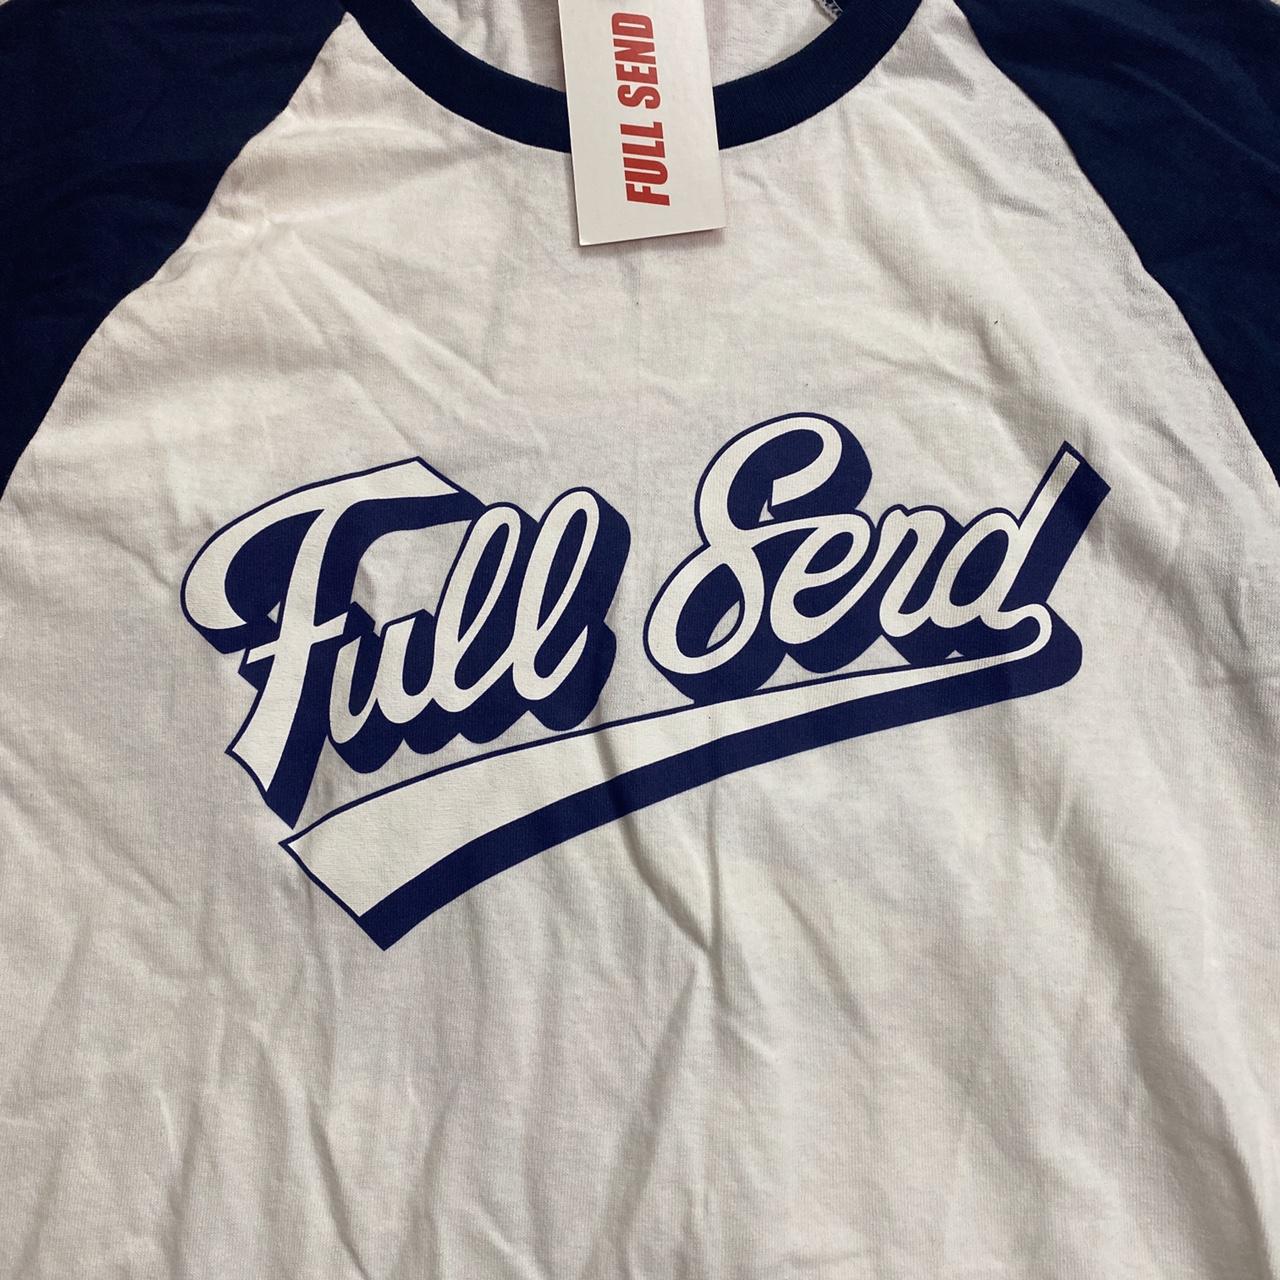 Nelk Boys Full Send baseball jersey LIMITED